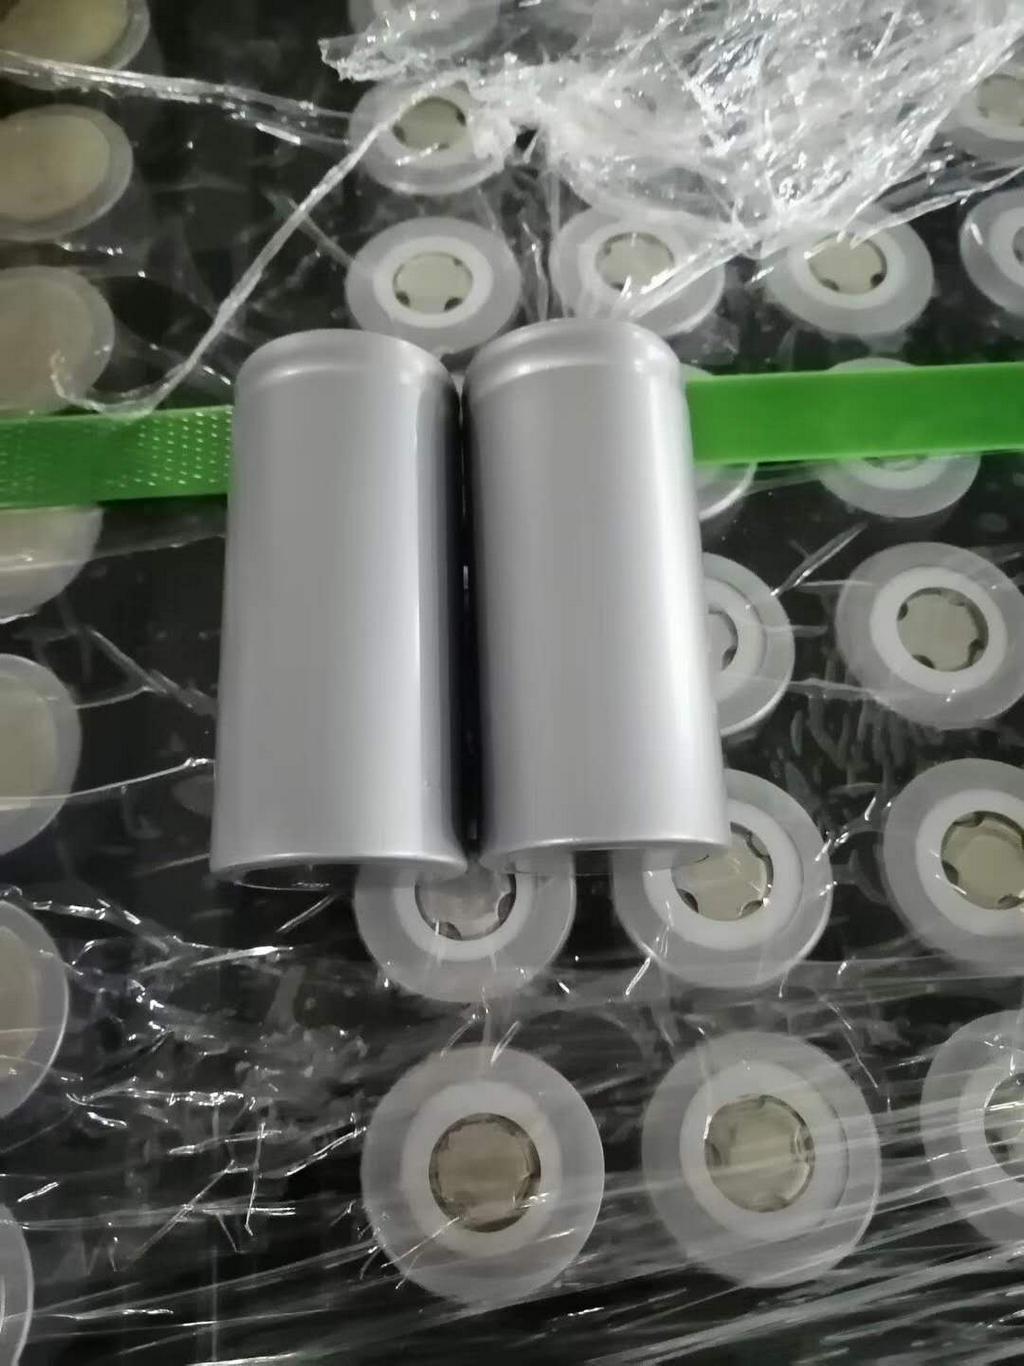 珠三角锂电池回收  沿海锂电池模组回收  内陆软包锂电池回收 山东圆柱锂电池回收  动力锂电池回收